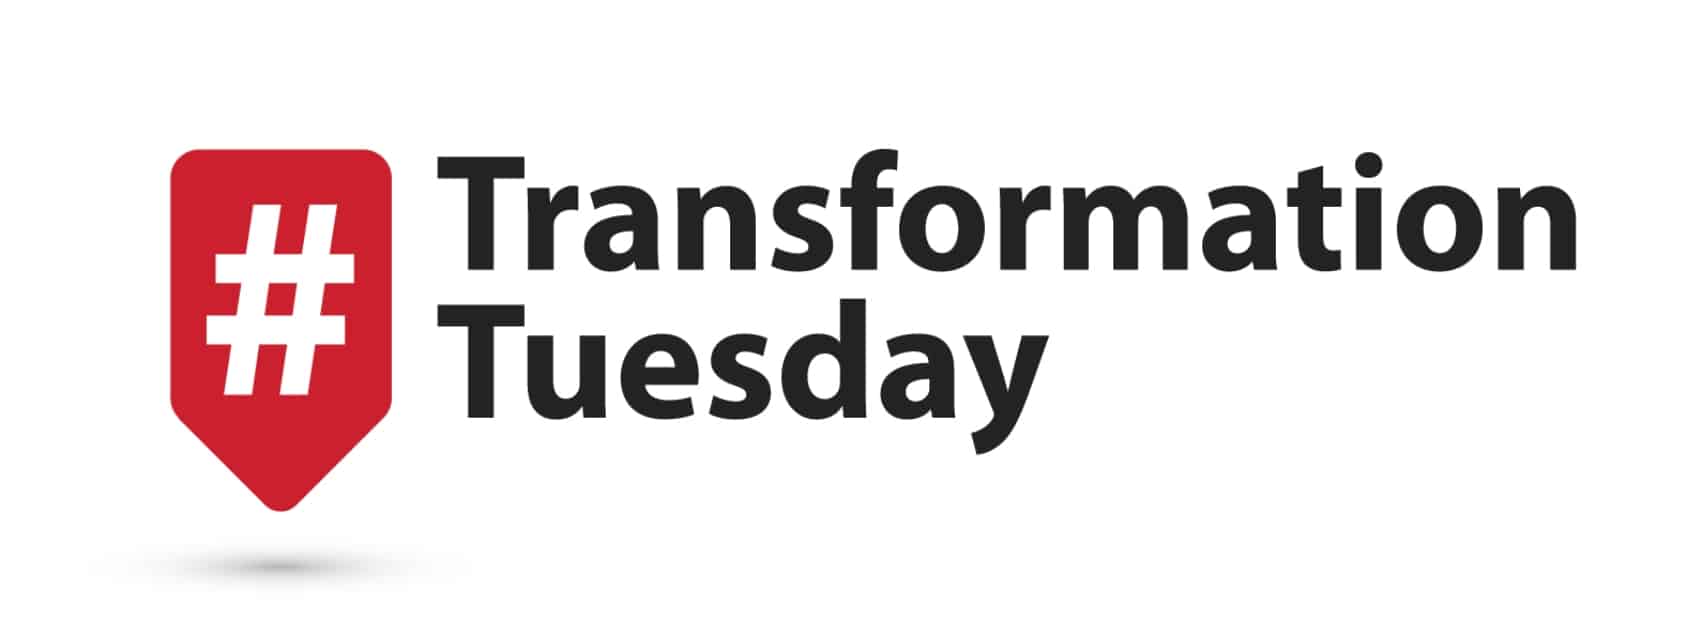 Transformation Tuesday – Full Exterior Renovation in Okotoks